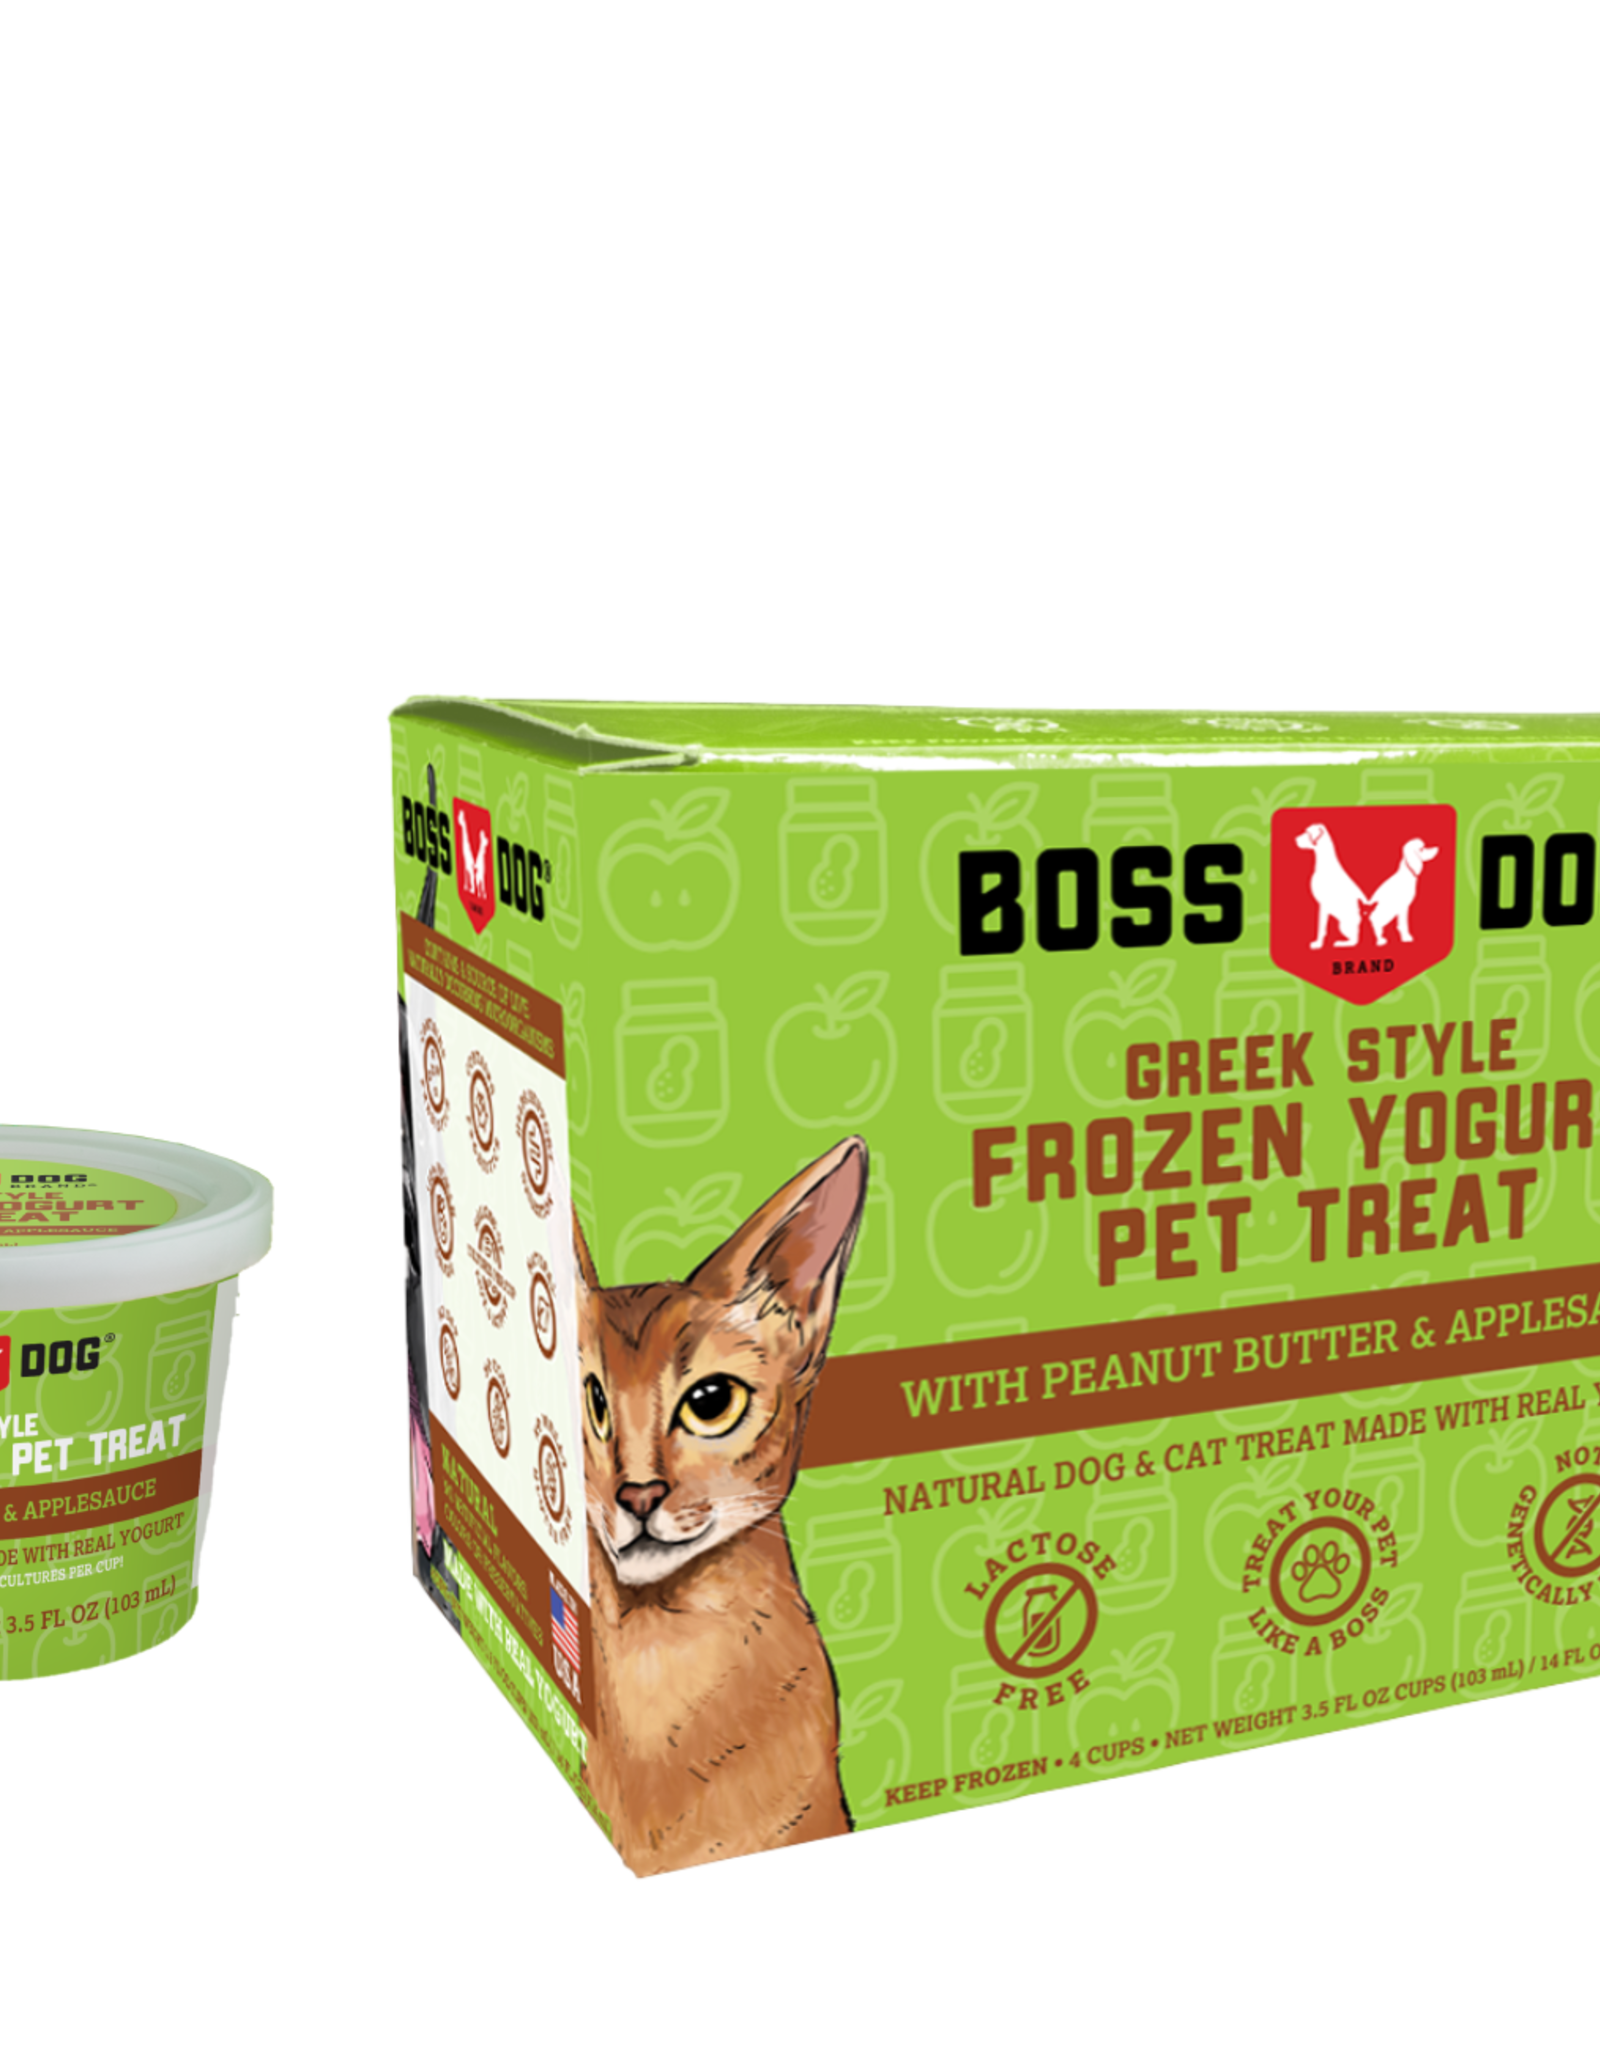 Boss Dog Boss Dog Frozen Yogurt Peanut Butter & Applesauce